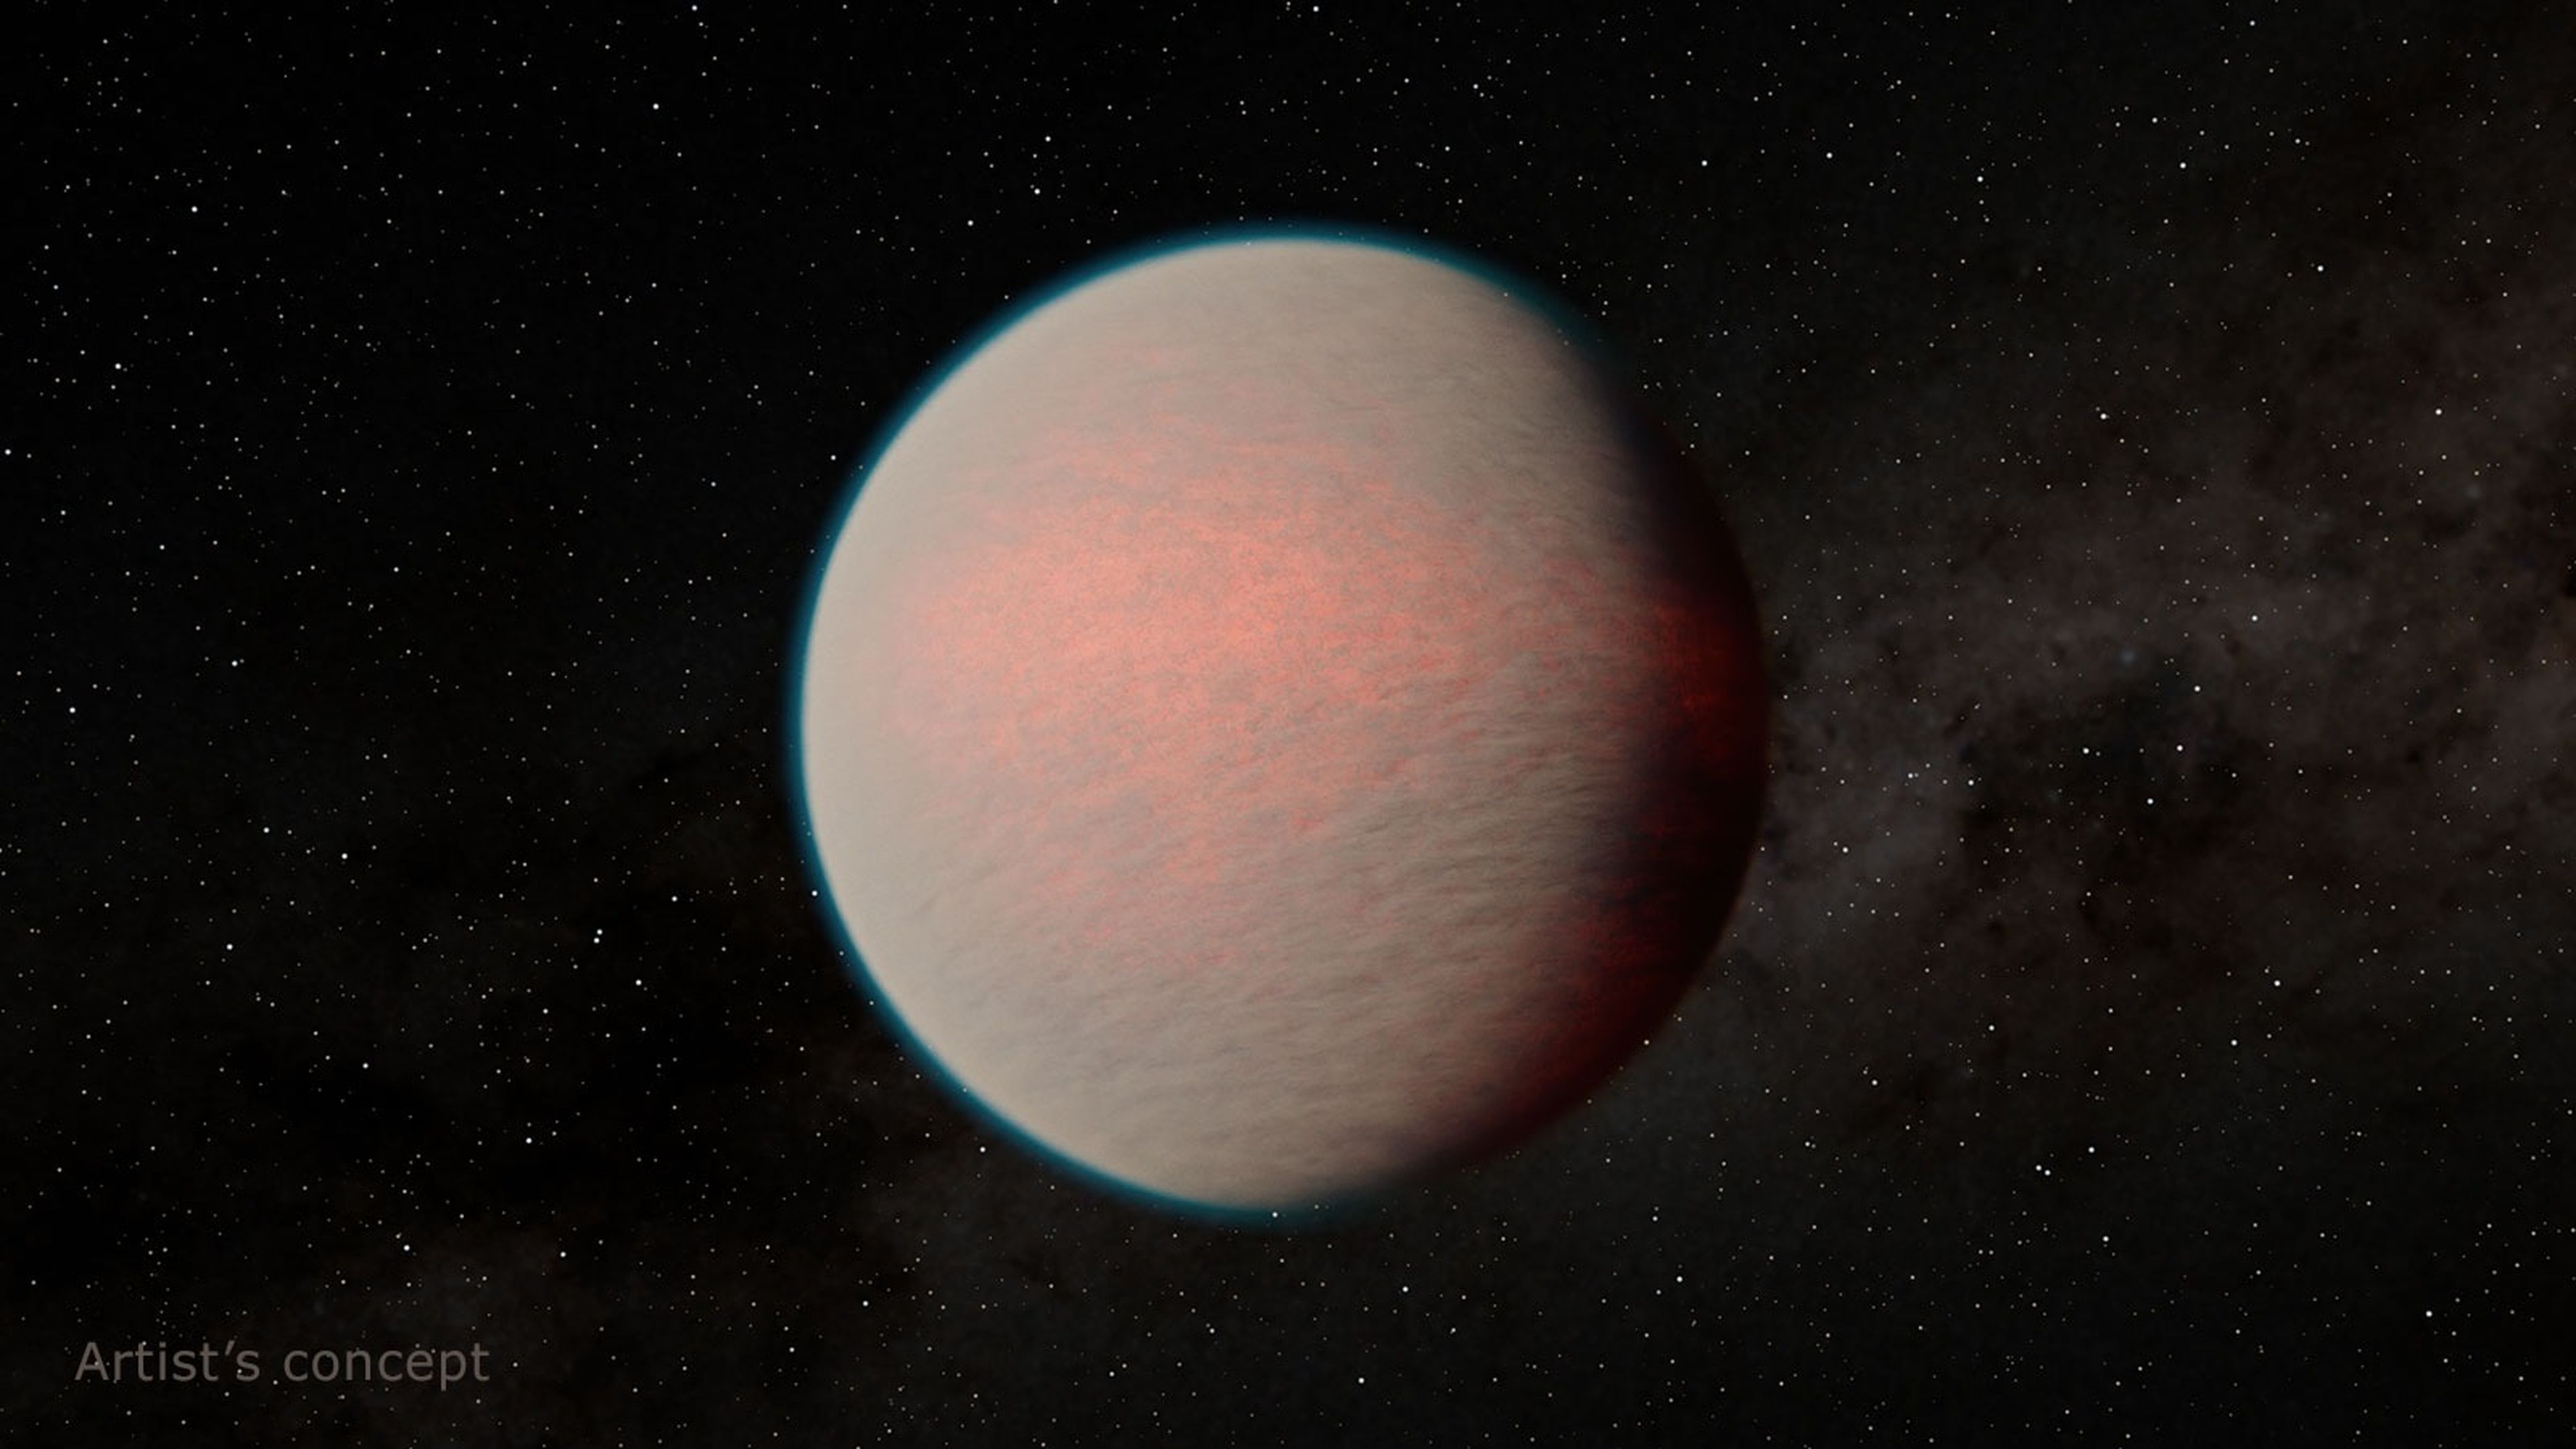 El telescopio James Webb encuentra un exoplaneta que la NASA tilda como “mini-Neptuno”